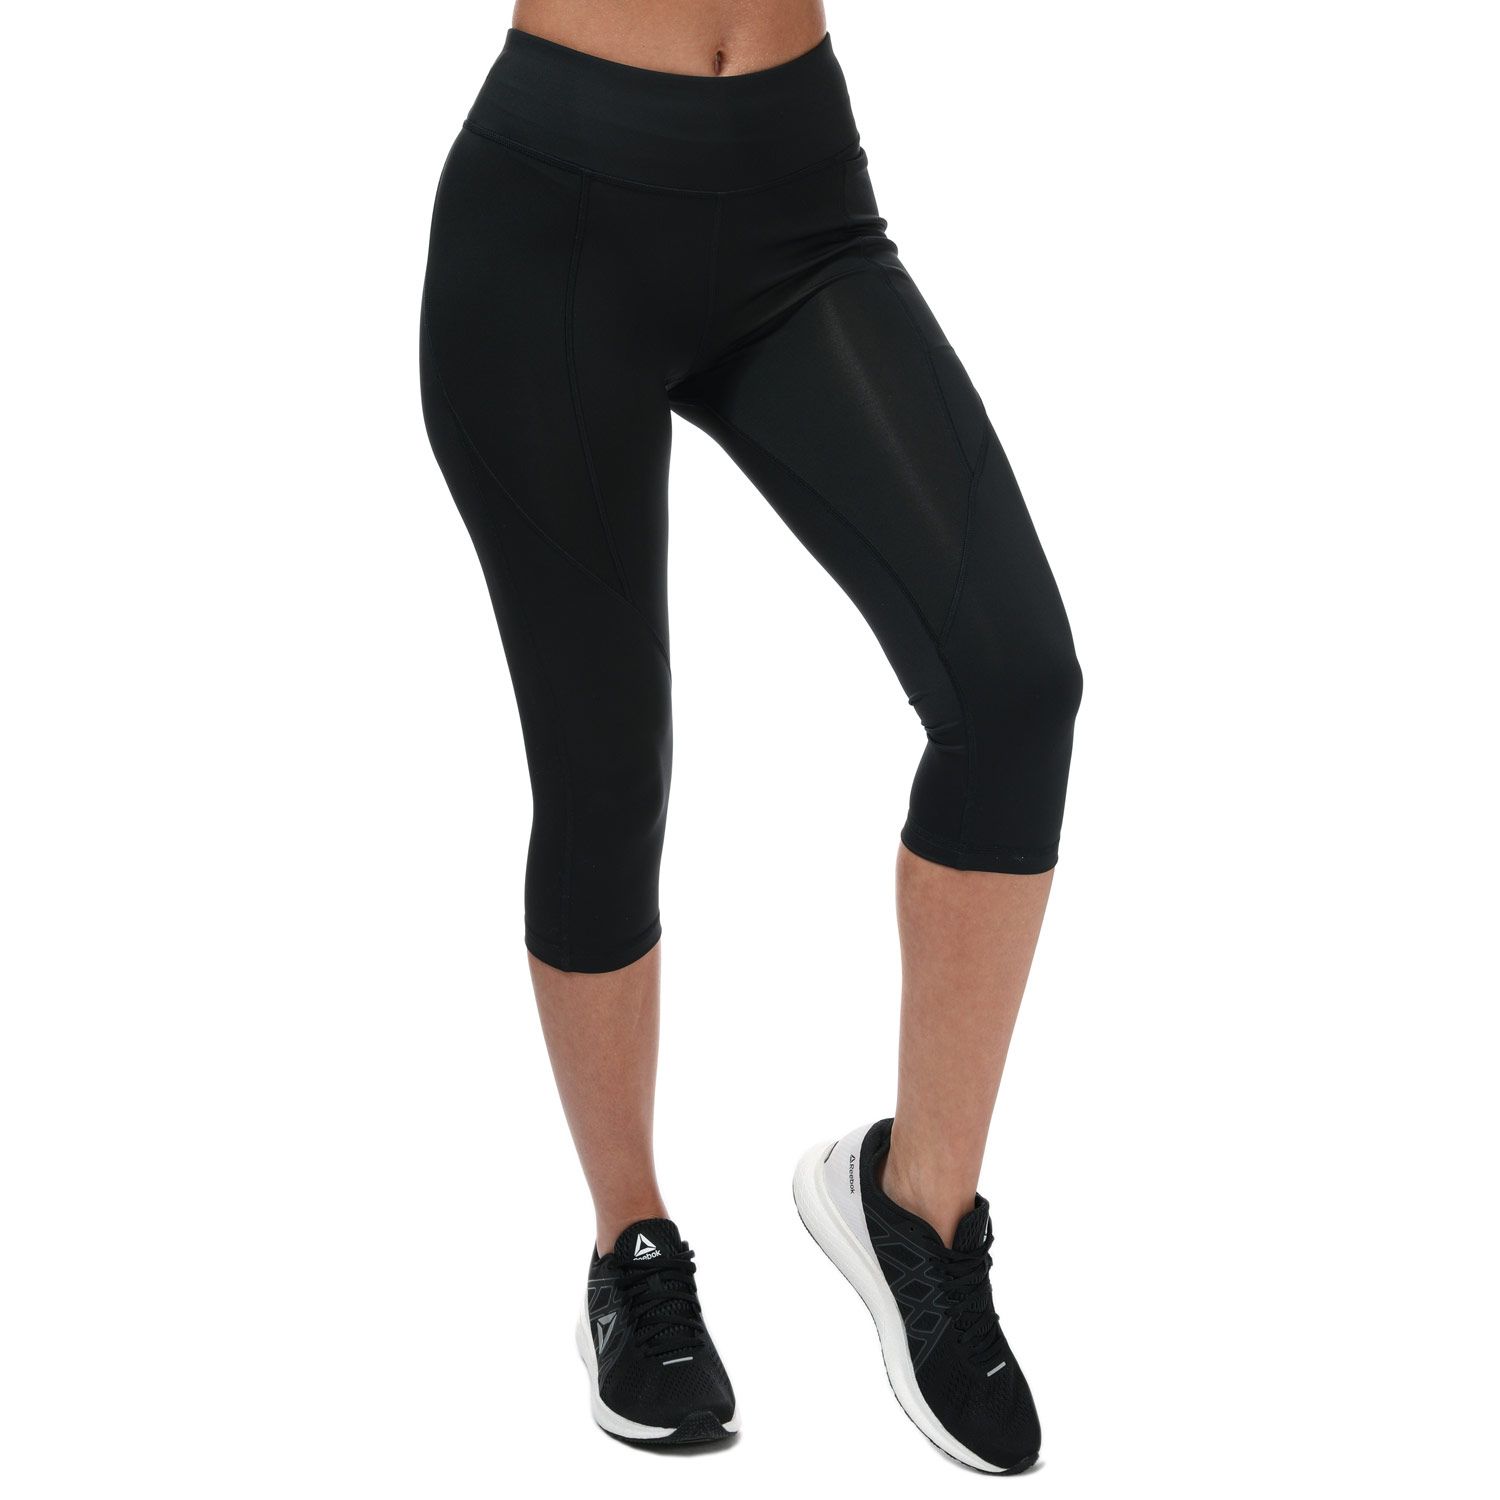 Black Reebok Womens Workout Ready Pant Program Capri Tights - Get